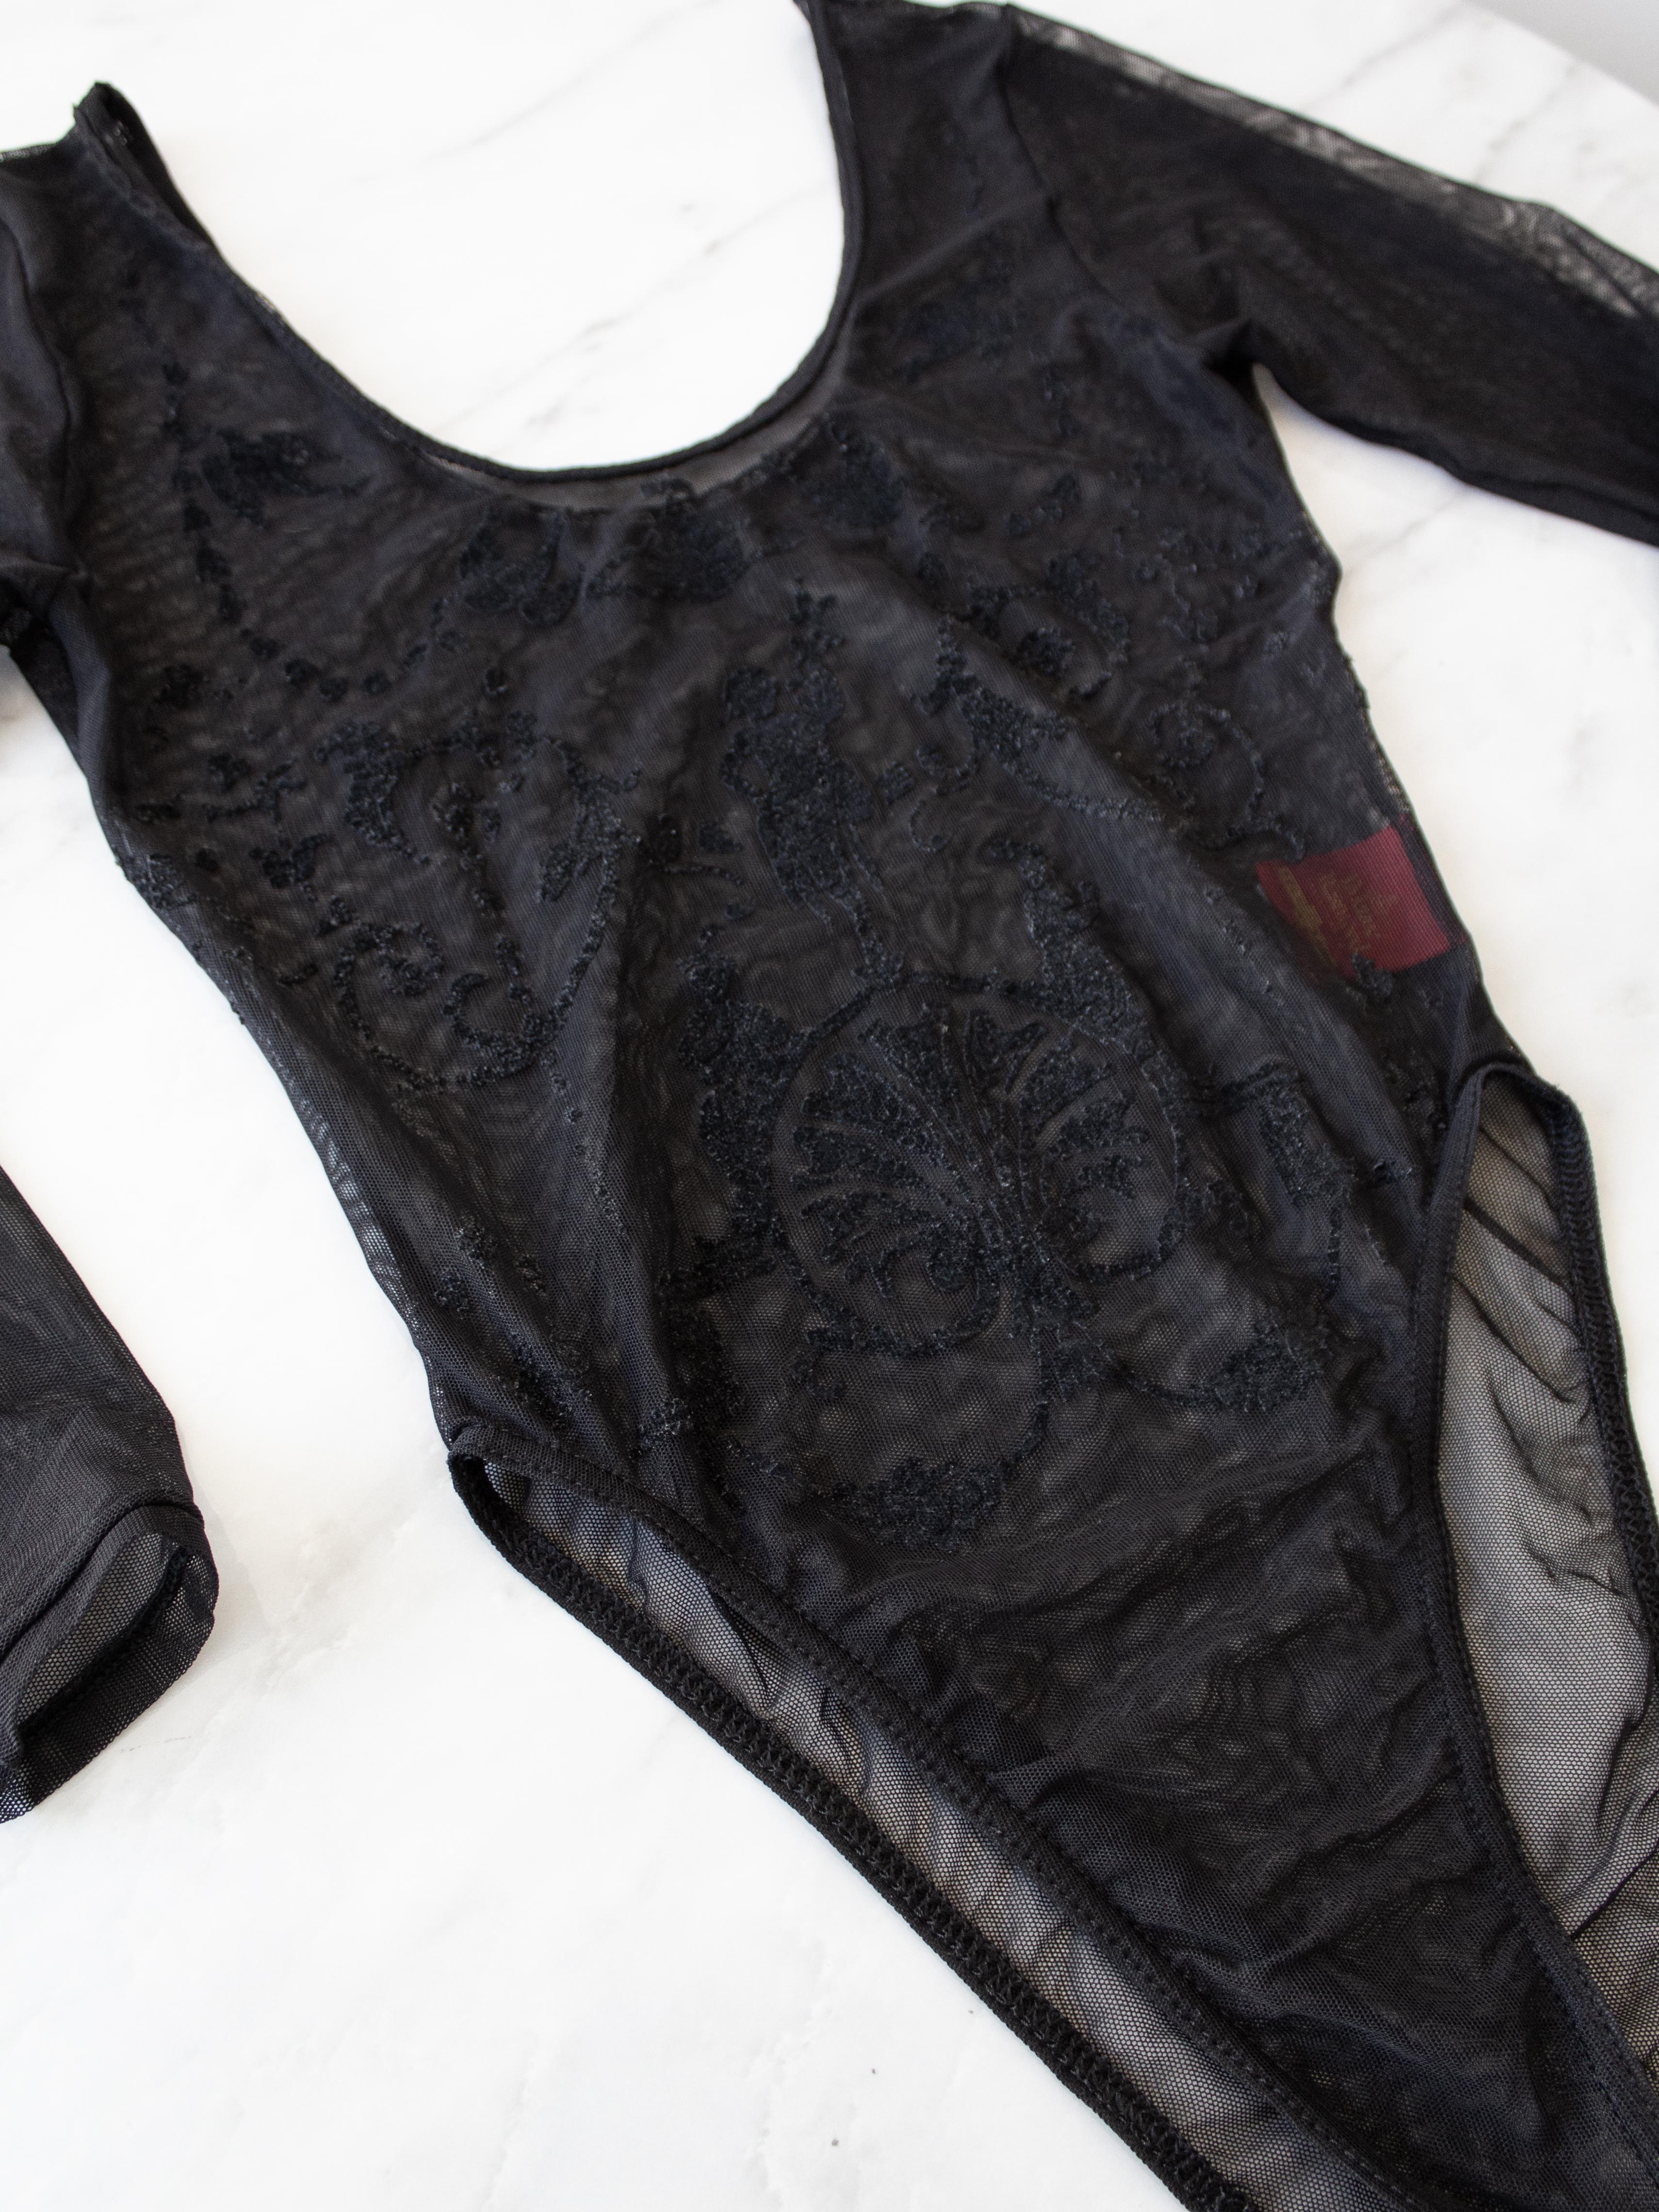 Vivienne Westwood x Sock Shop 1992 Boulle Sheer Mesh Black Bodysuit For Sale 9